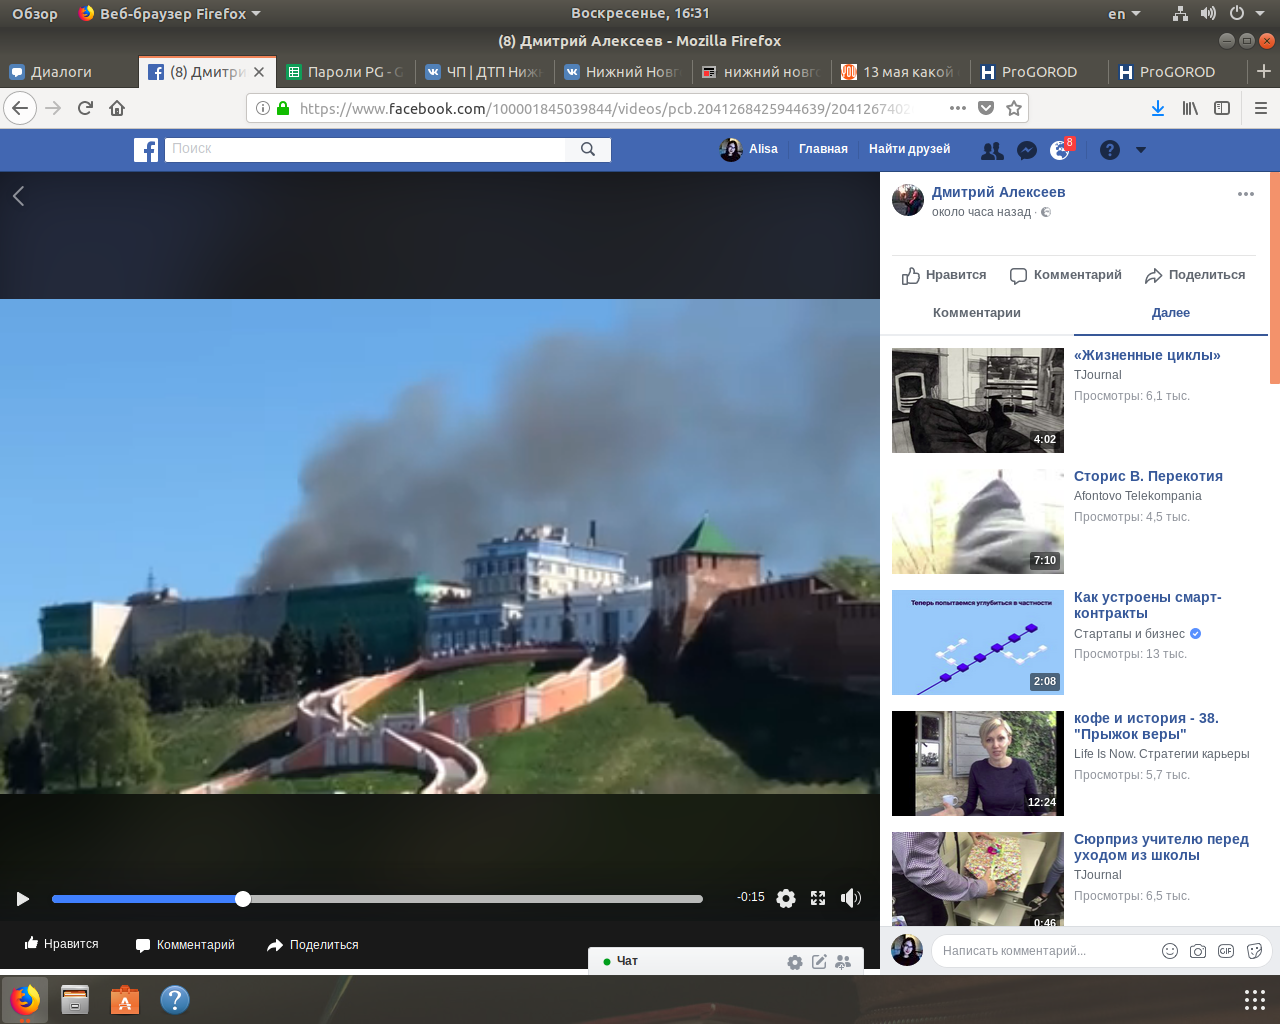 В центре Нижнего Новгорода произошло возгорание (ВИДЕО)